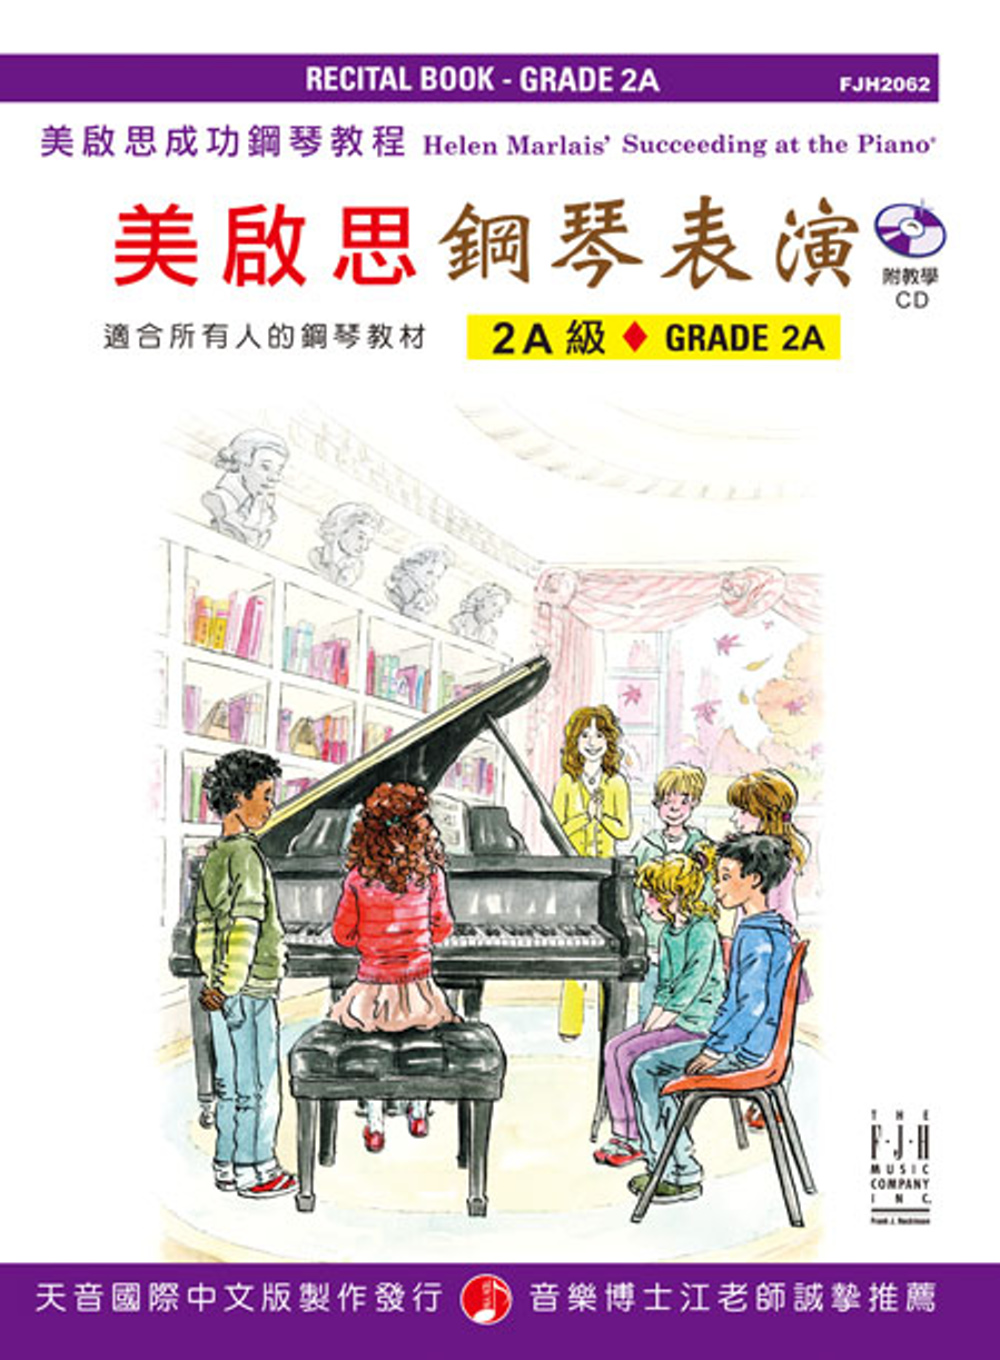 <美啟思>成功鋼琴表演-2A級+CD